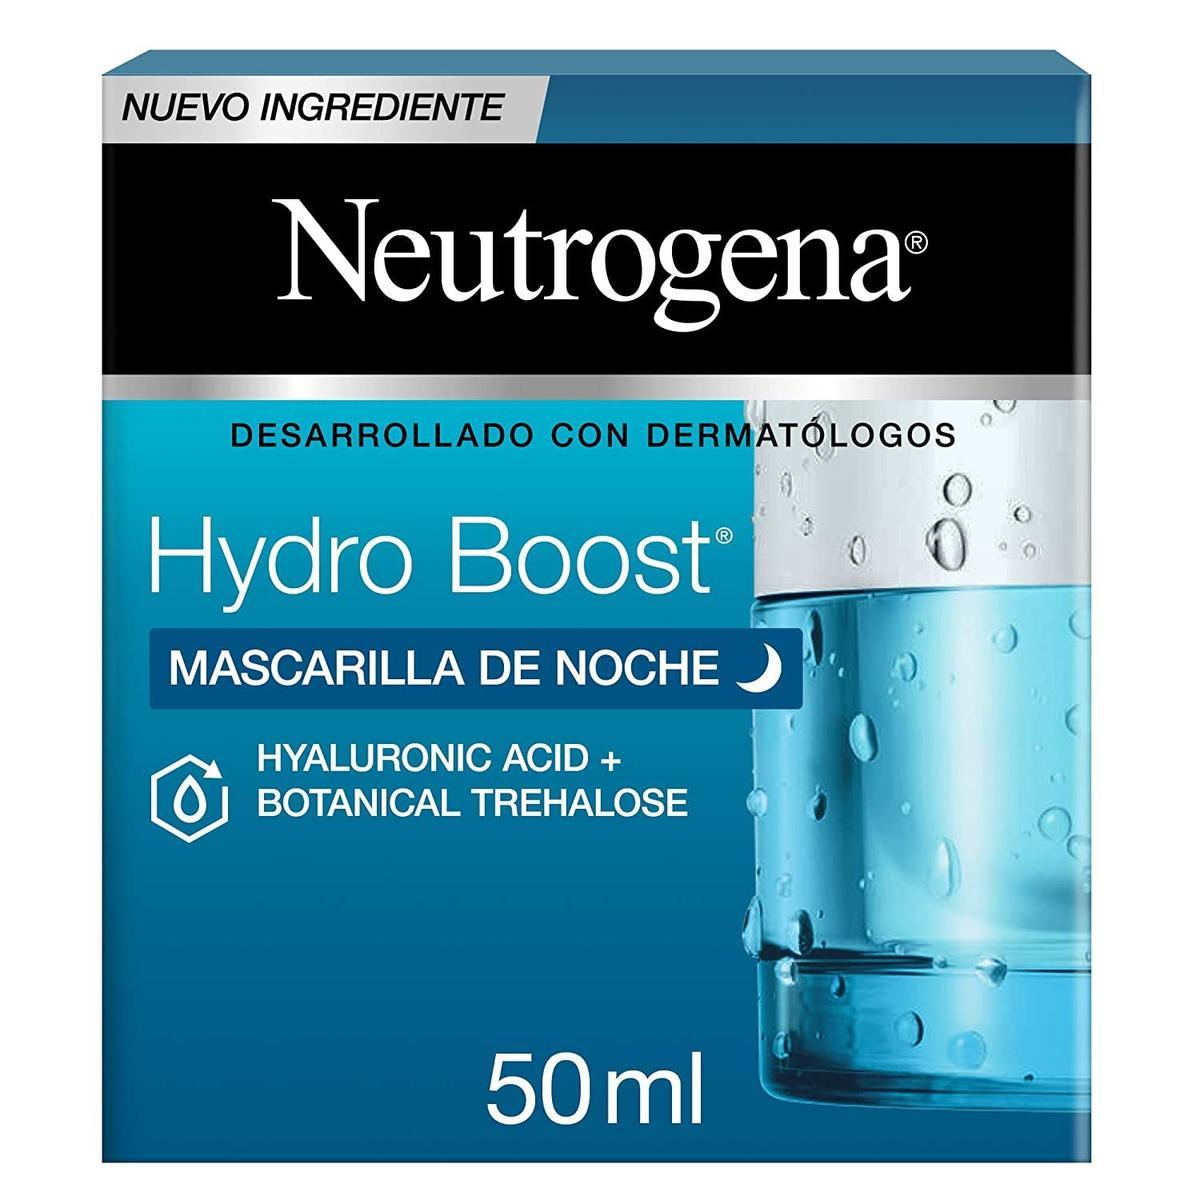 Mascarilla de noche Hydro Boost de Neutrogena